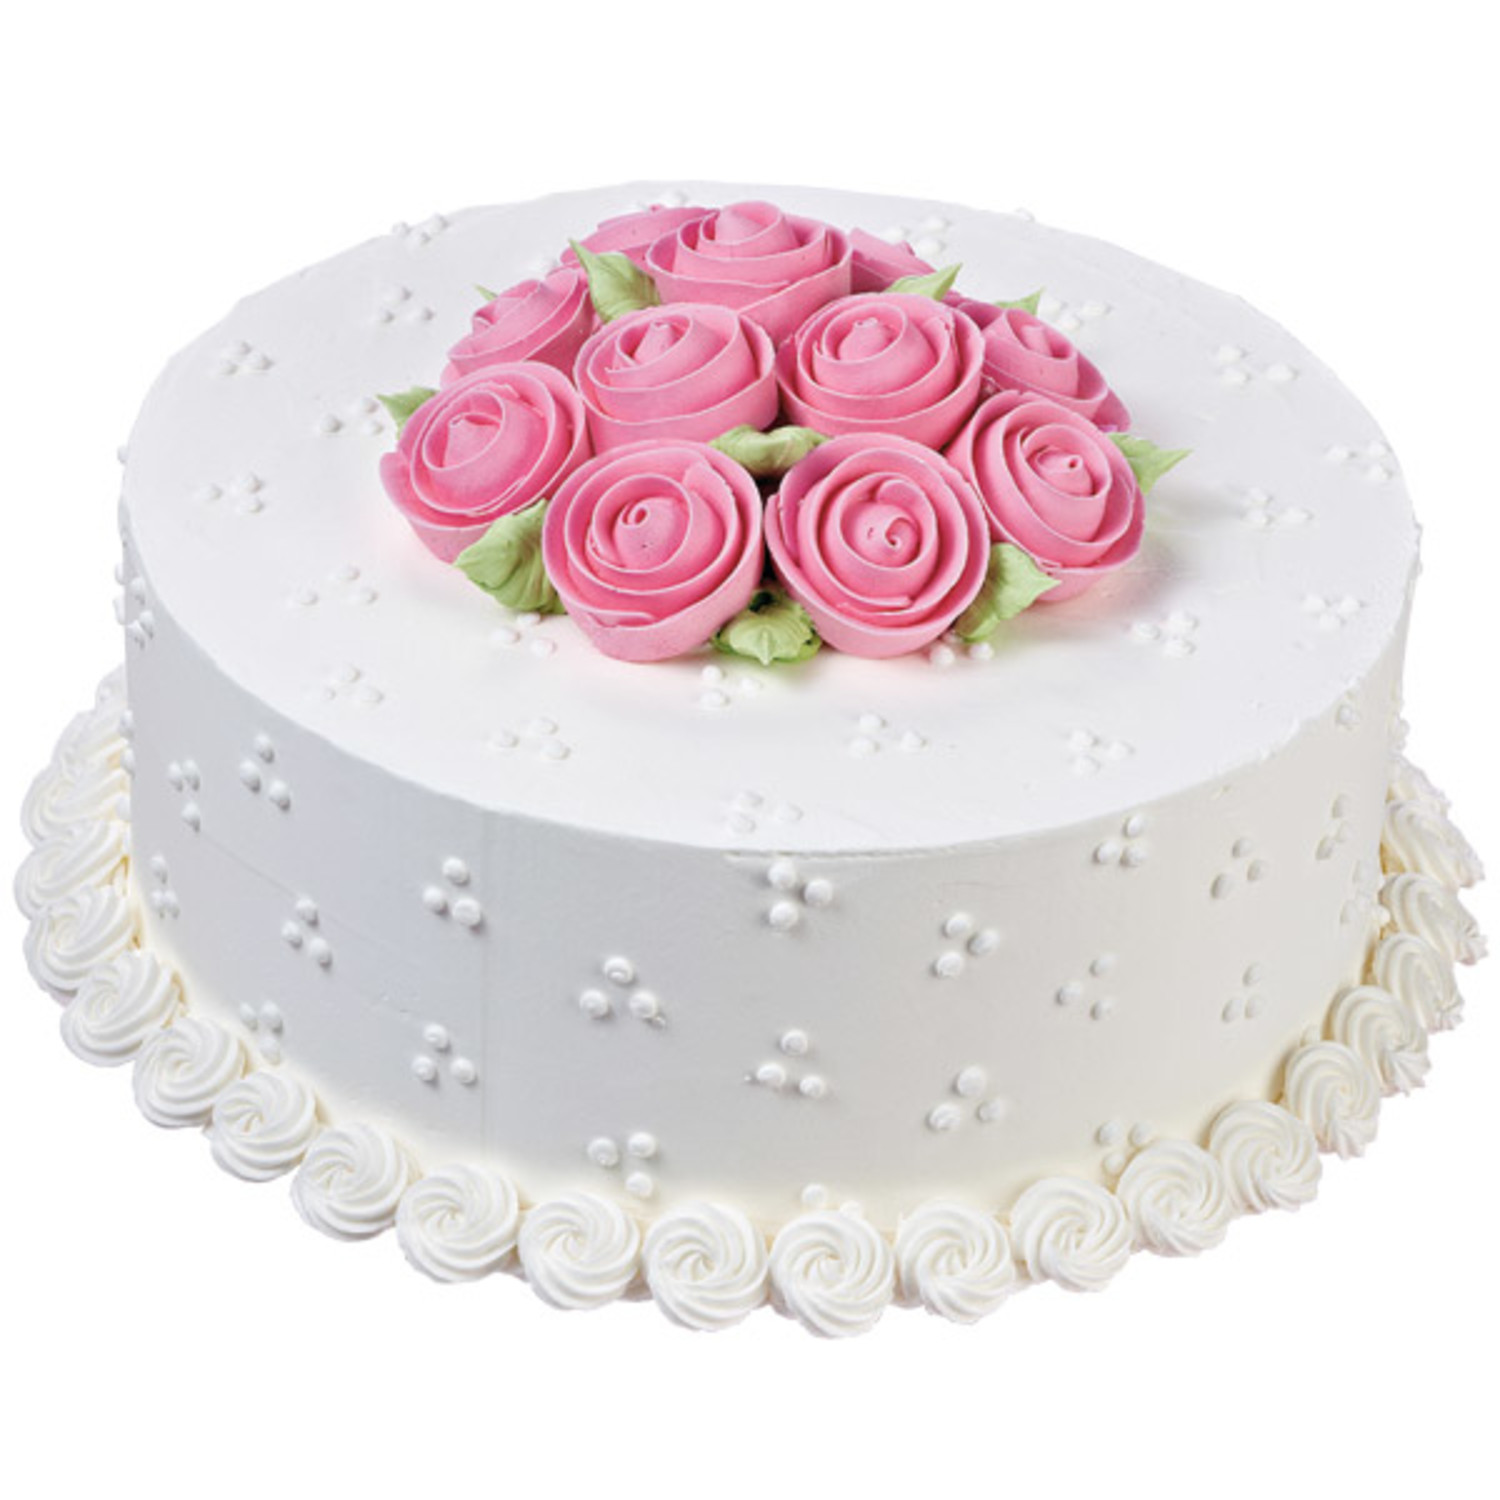 Beautiful wedding cake ideas from Cakes by Tasha - English Wedding